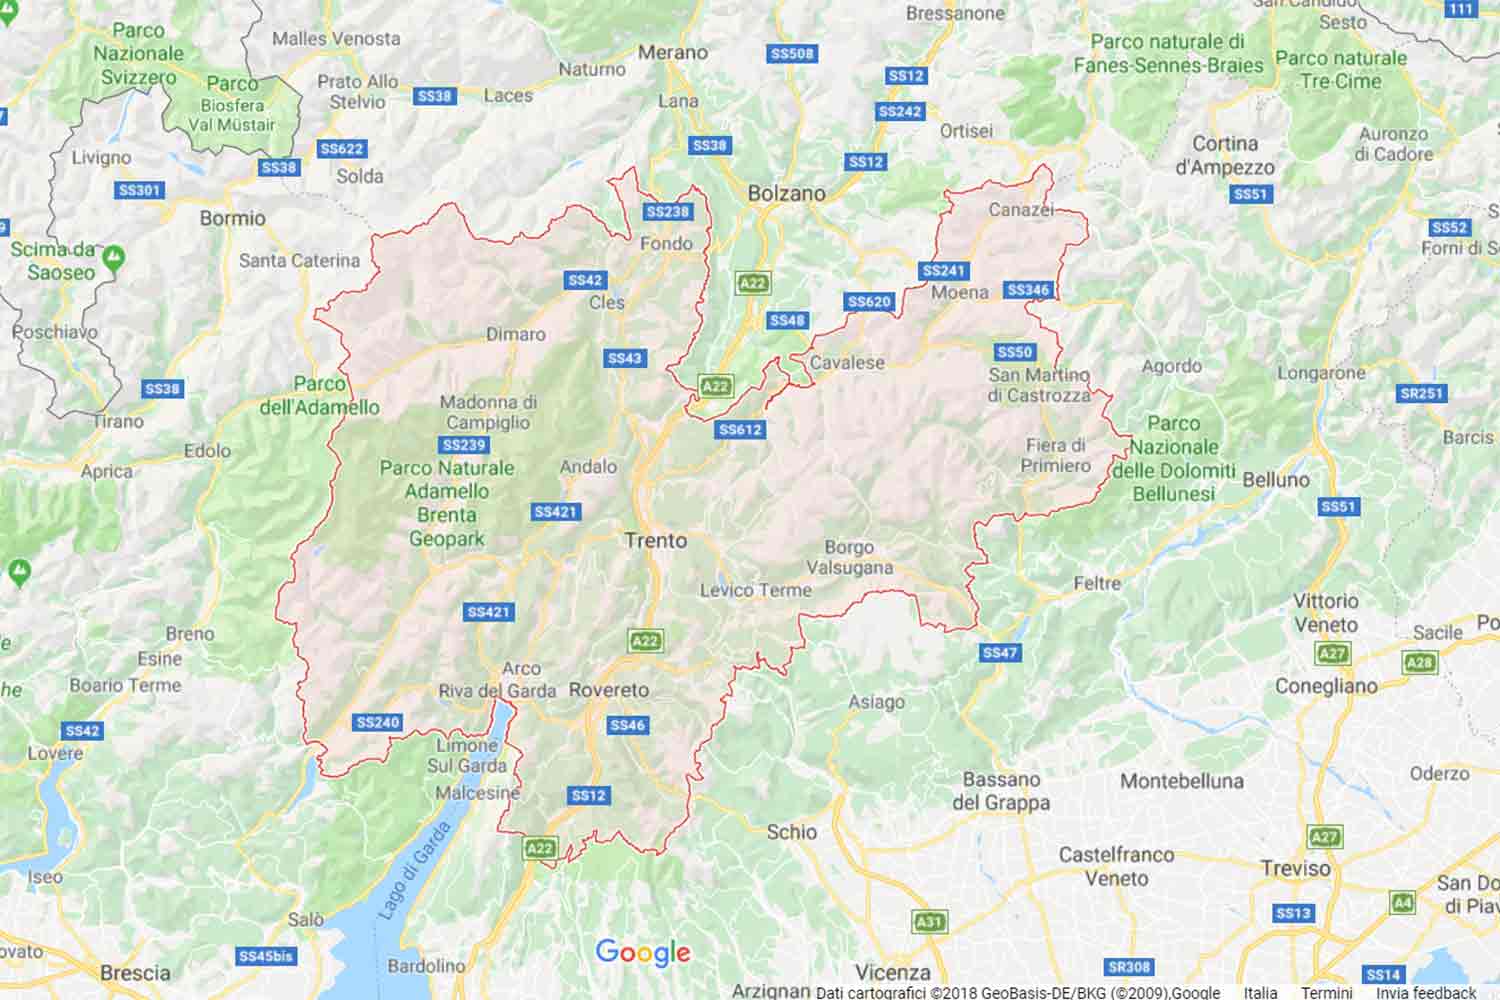 Trentino - Trento - Tre Ville Preventivi Veloci google maps